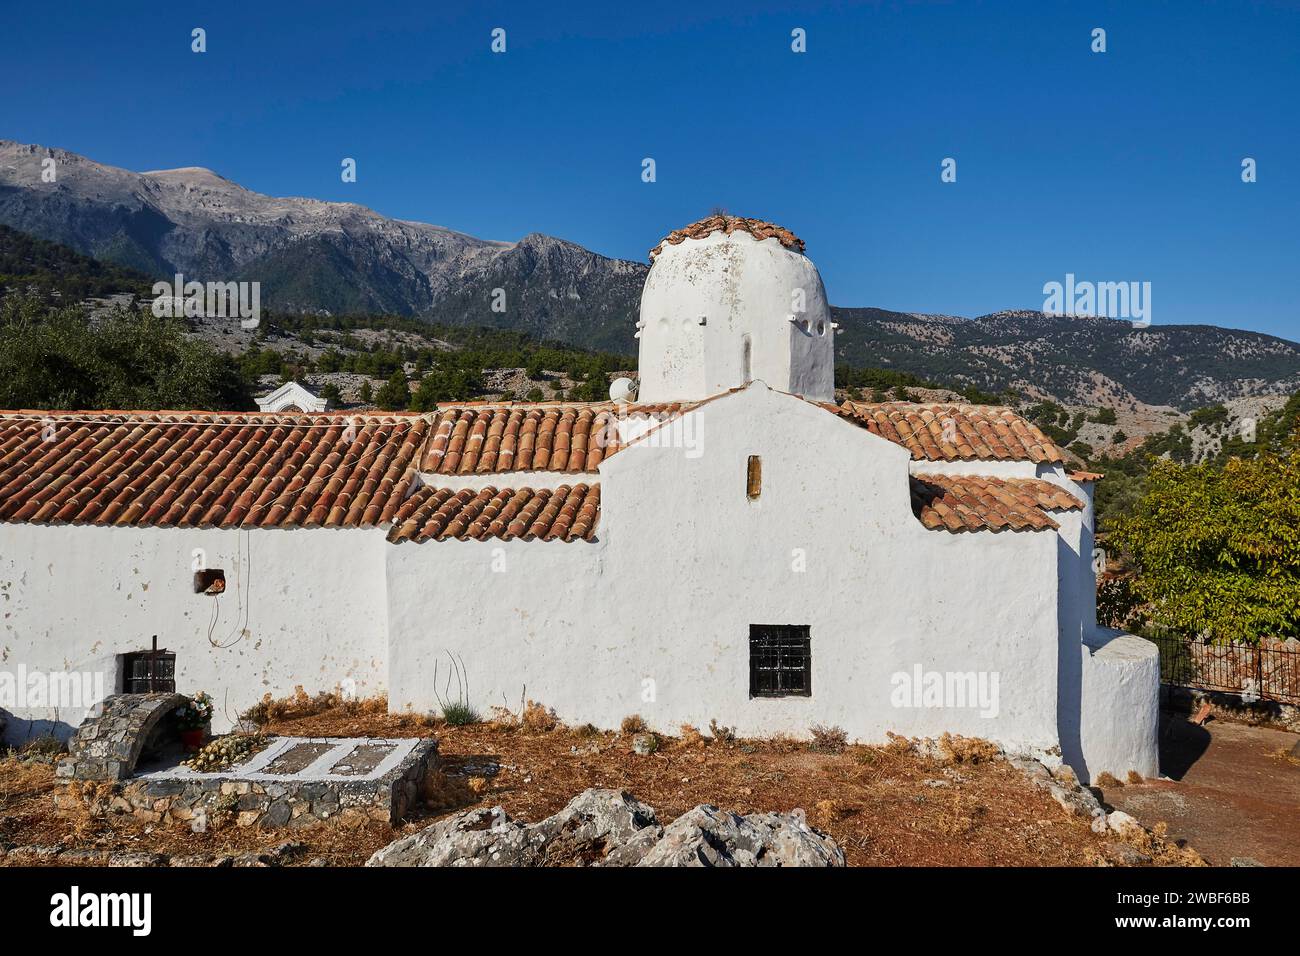 Chiesa di San Michele Arcangelo, chiesa a cupola, architettura della chiesa bianca su uno sfondo di montagne e cielo blu, Aradena Gorge Foto Stock